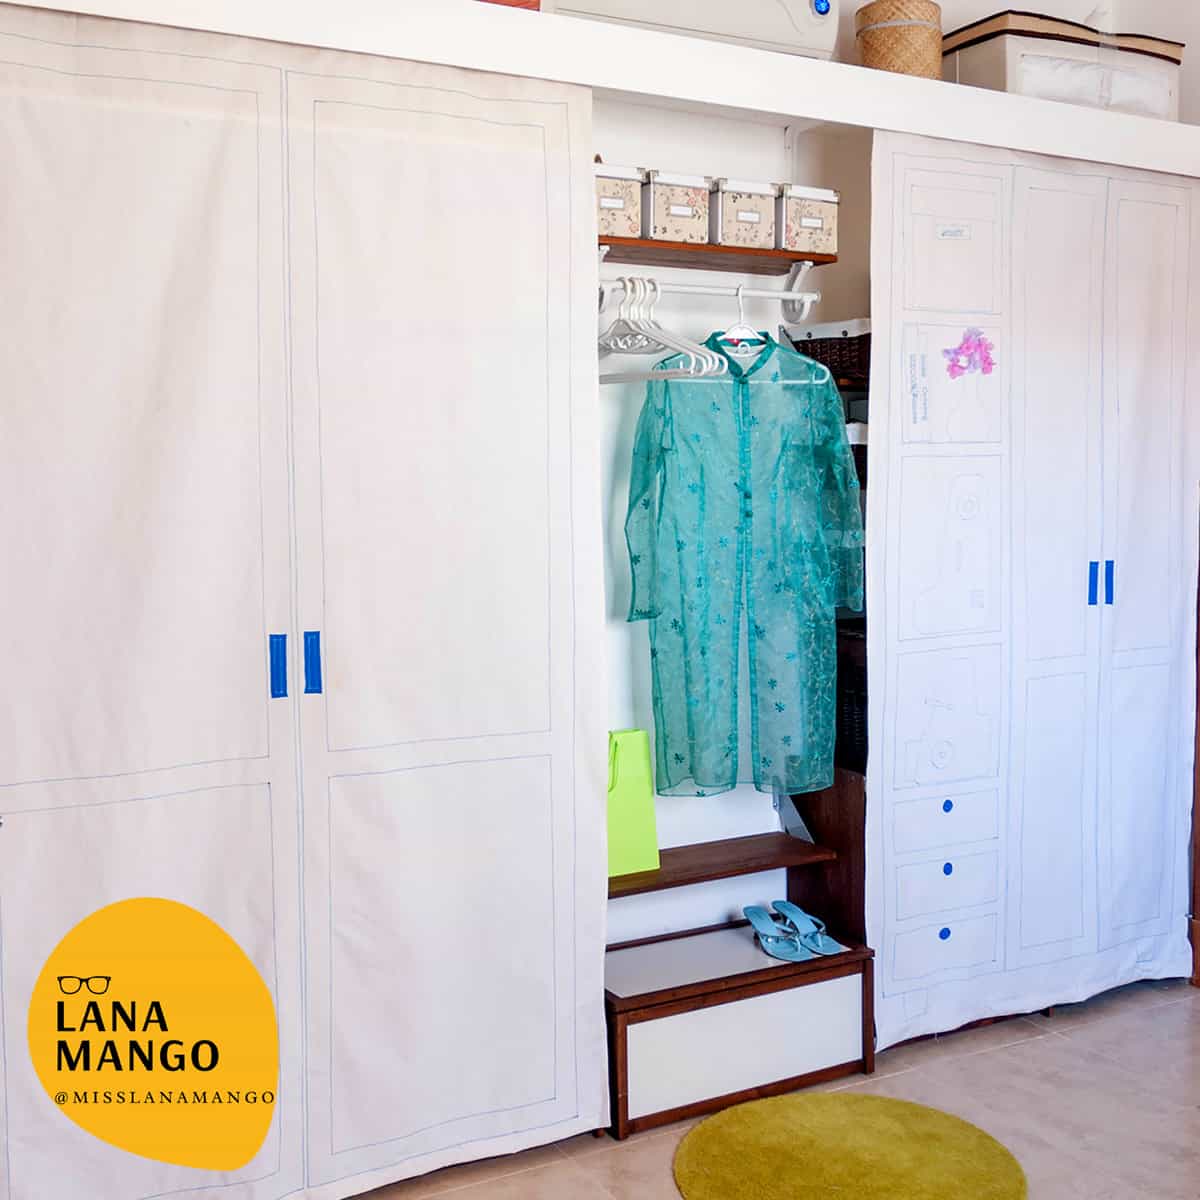 Fake, fun and cool, diy fabric closet doors curtains ideas